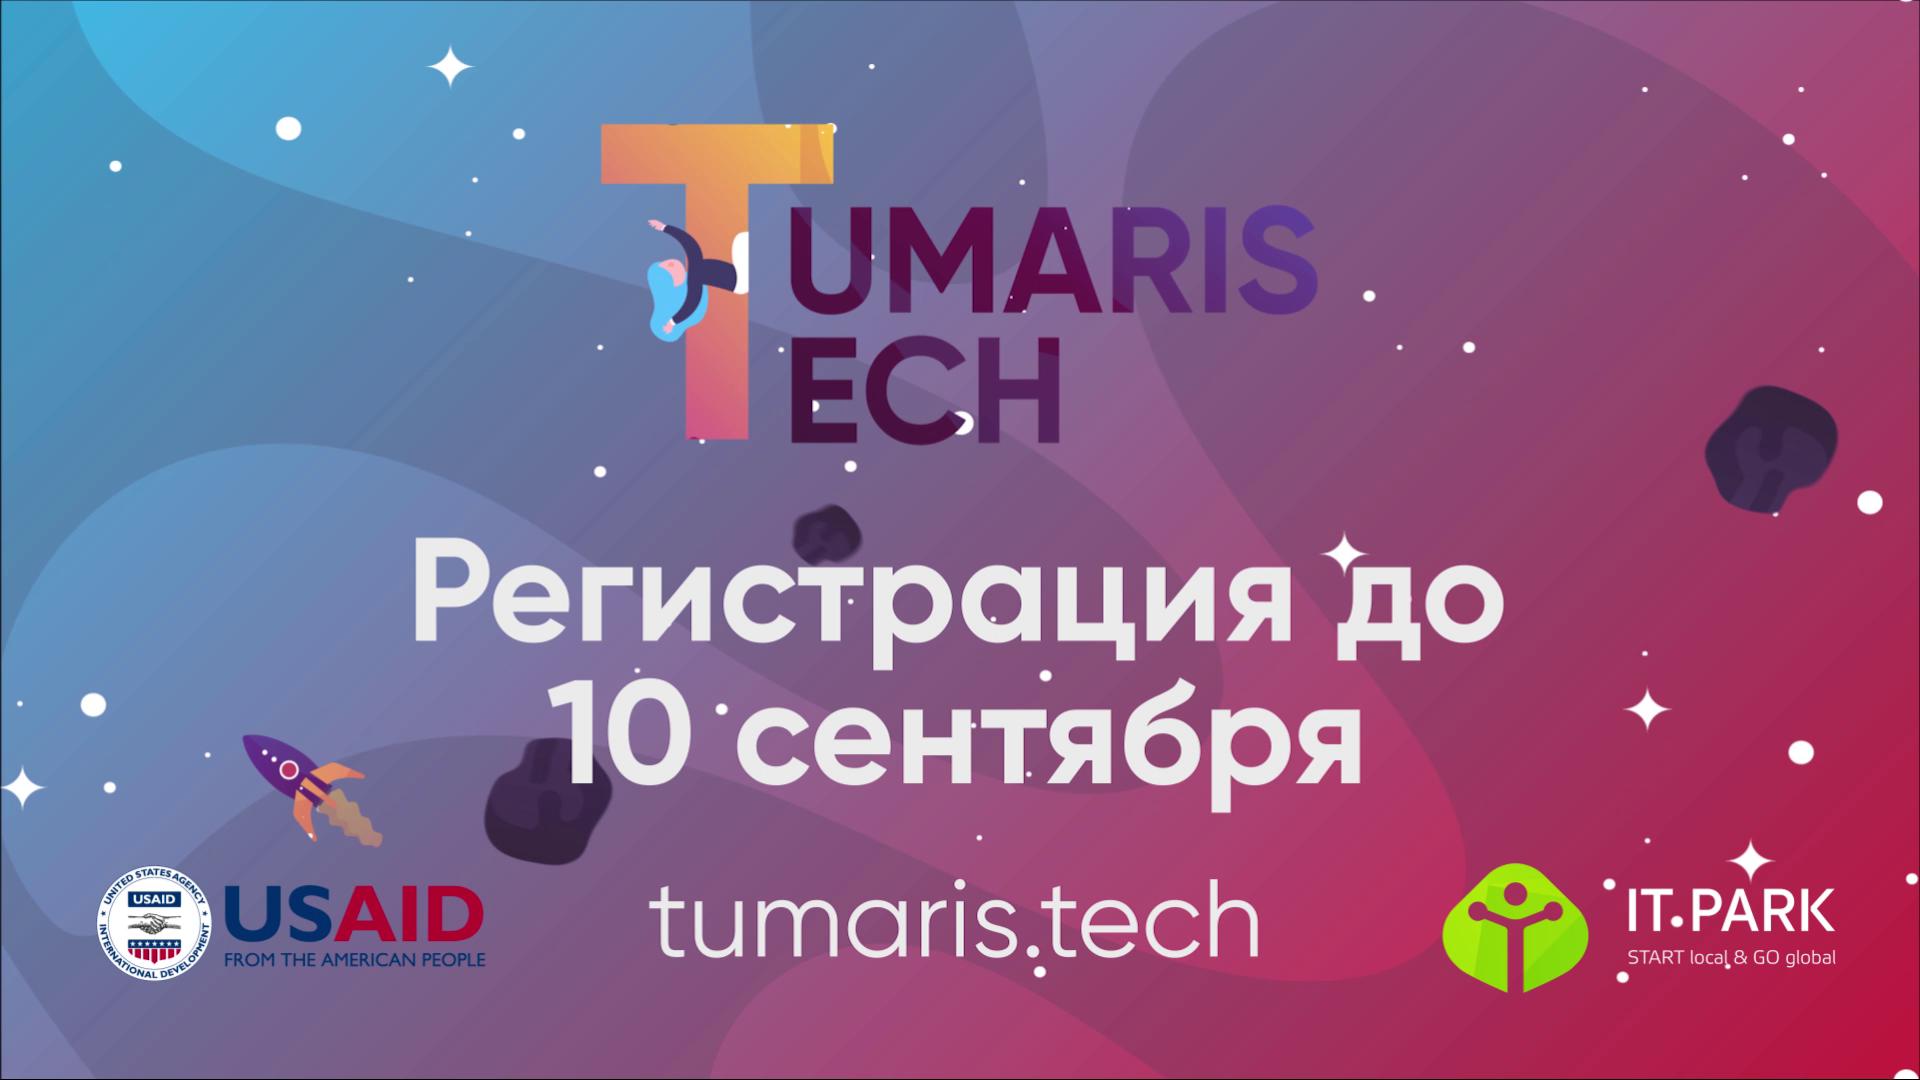 У женщин Узбекистана появилась новая возможность создать свой собственный технологичный бизнес вместе с TumarisTech